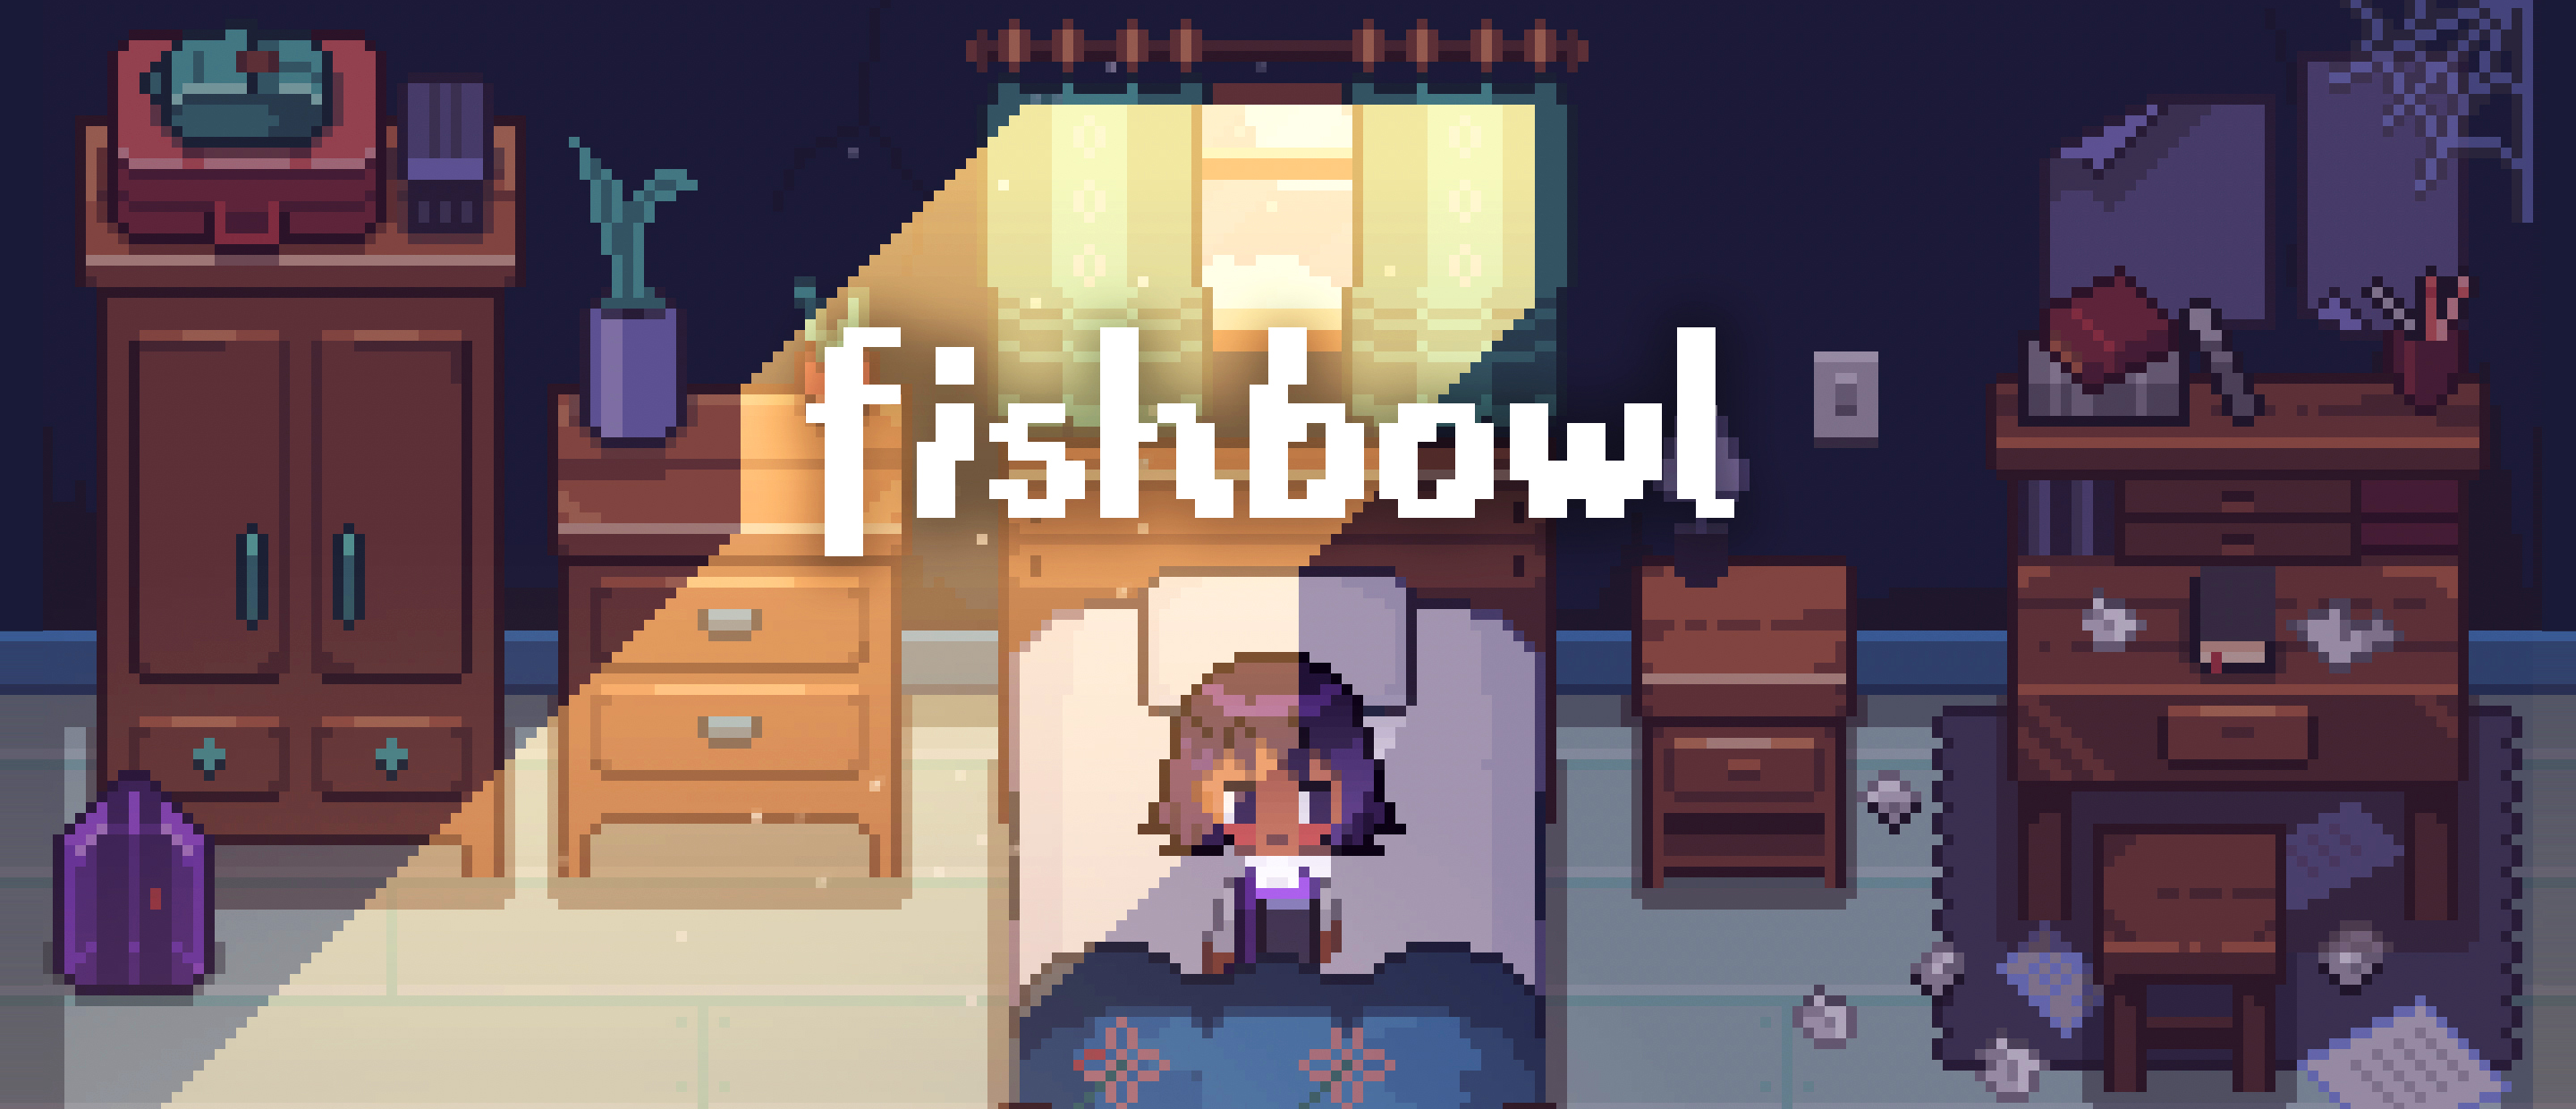 Fishbowl screenshot: Alo in her bedroom